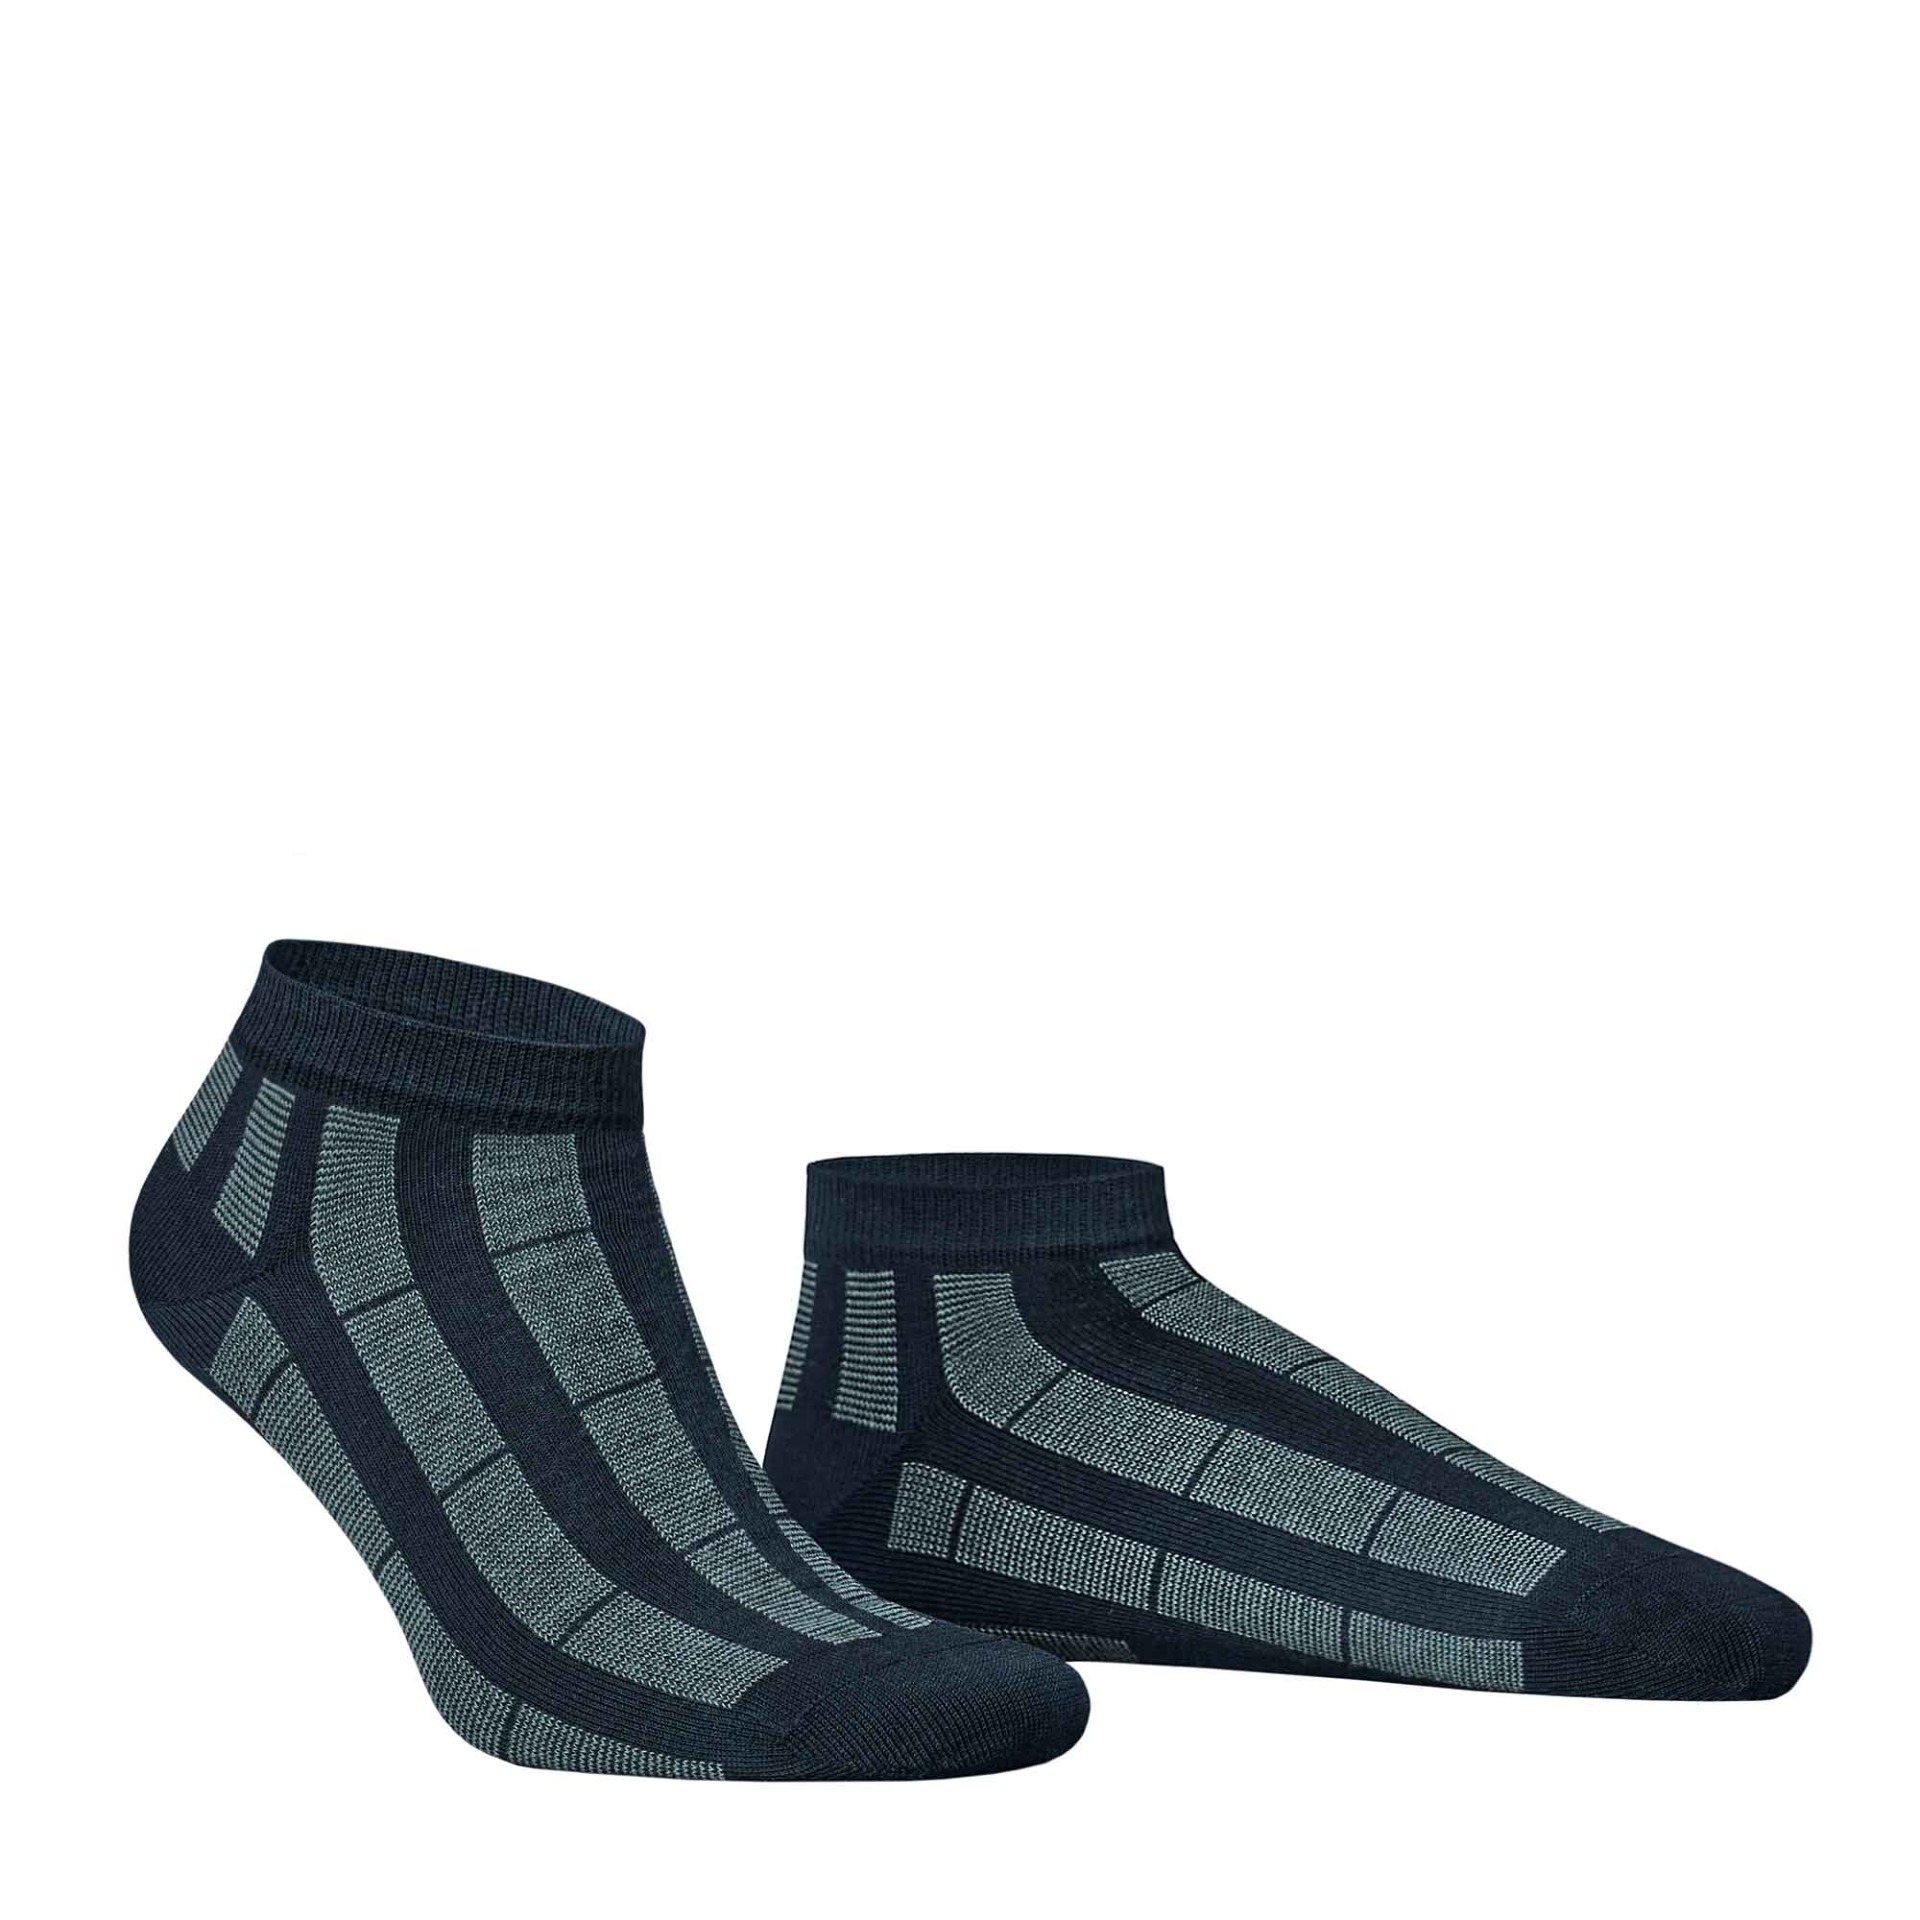 HUDSON Herren PIN -  43/46 - Sneaker Socken mit Streifen-Muster - Marine (Blau)